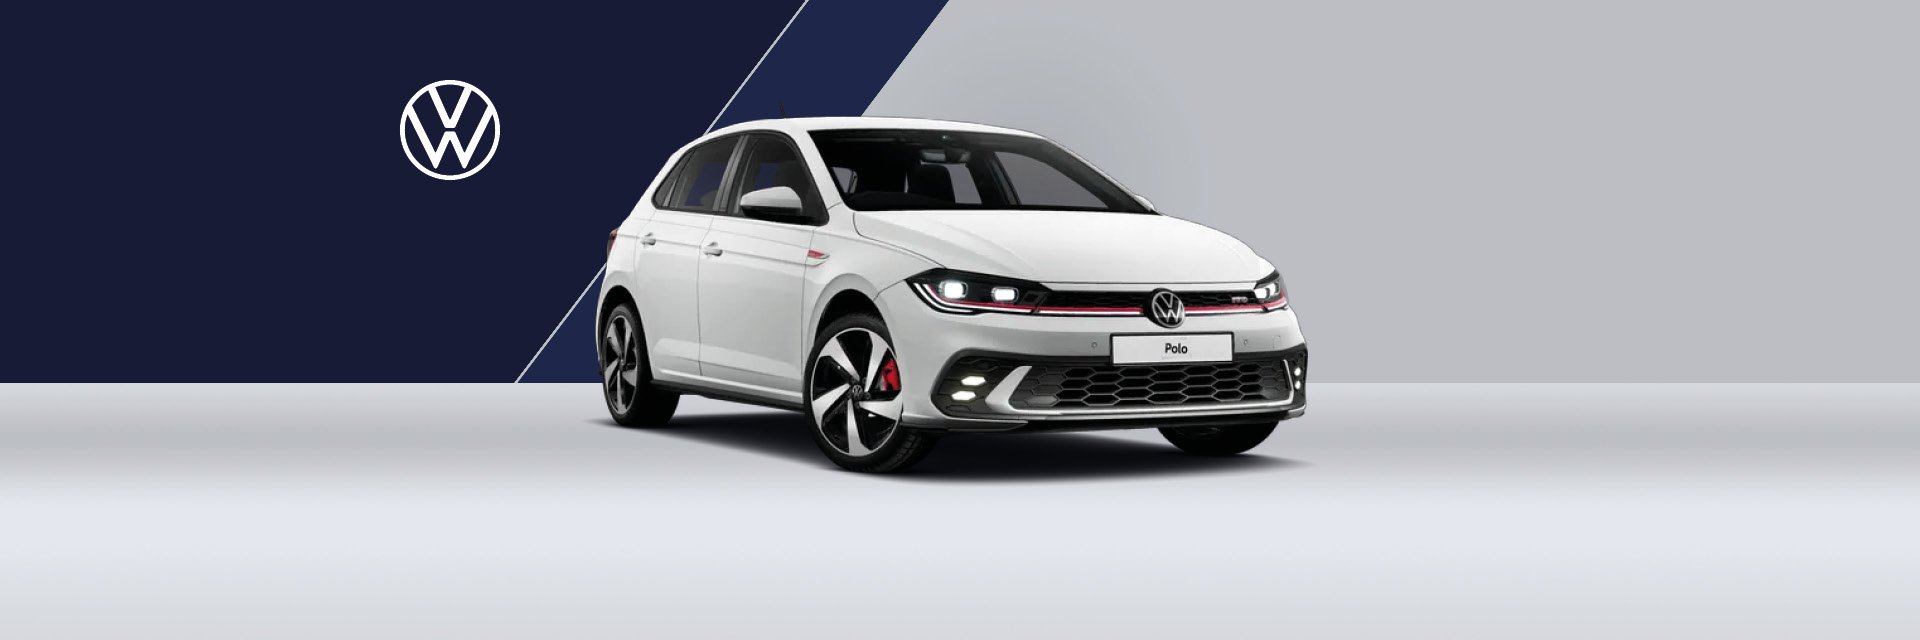 Volkswagen Zubehör für ihren Polo